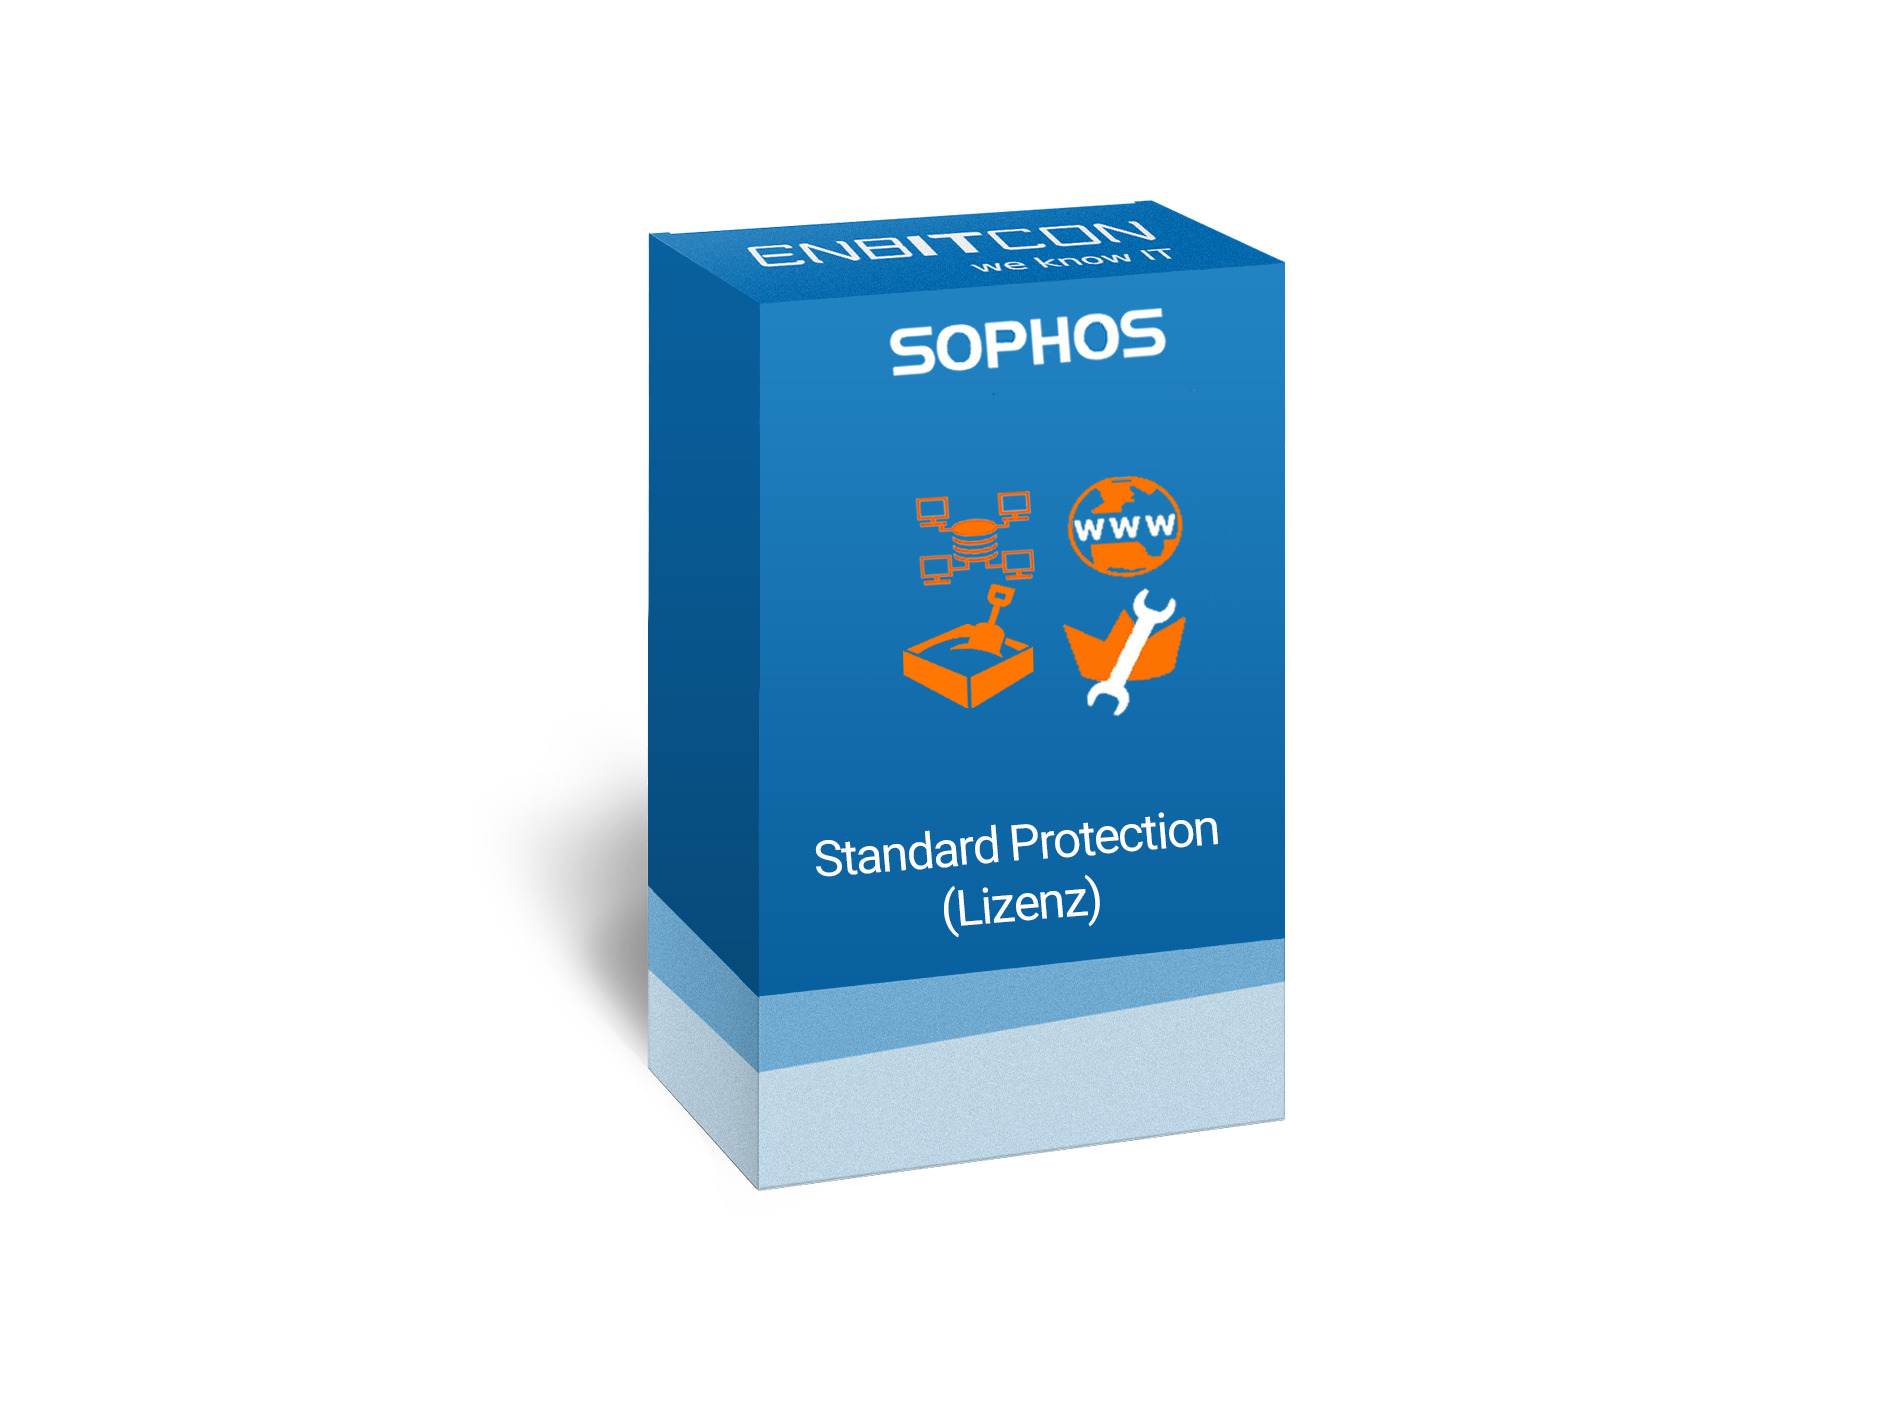 Sophos Standard Protection Lizenz Vorschaubild bestehend aus dem Sophos logo und einem blauen Schild, indem sich ein orangenes Computernetz, WWW, orangene Truhe und ein Schraubenschlüssel befinden